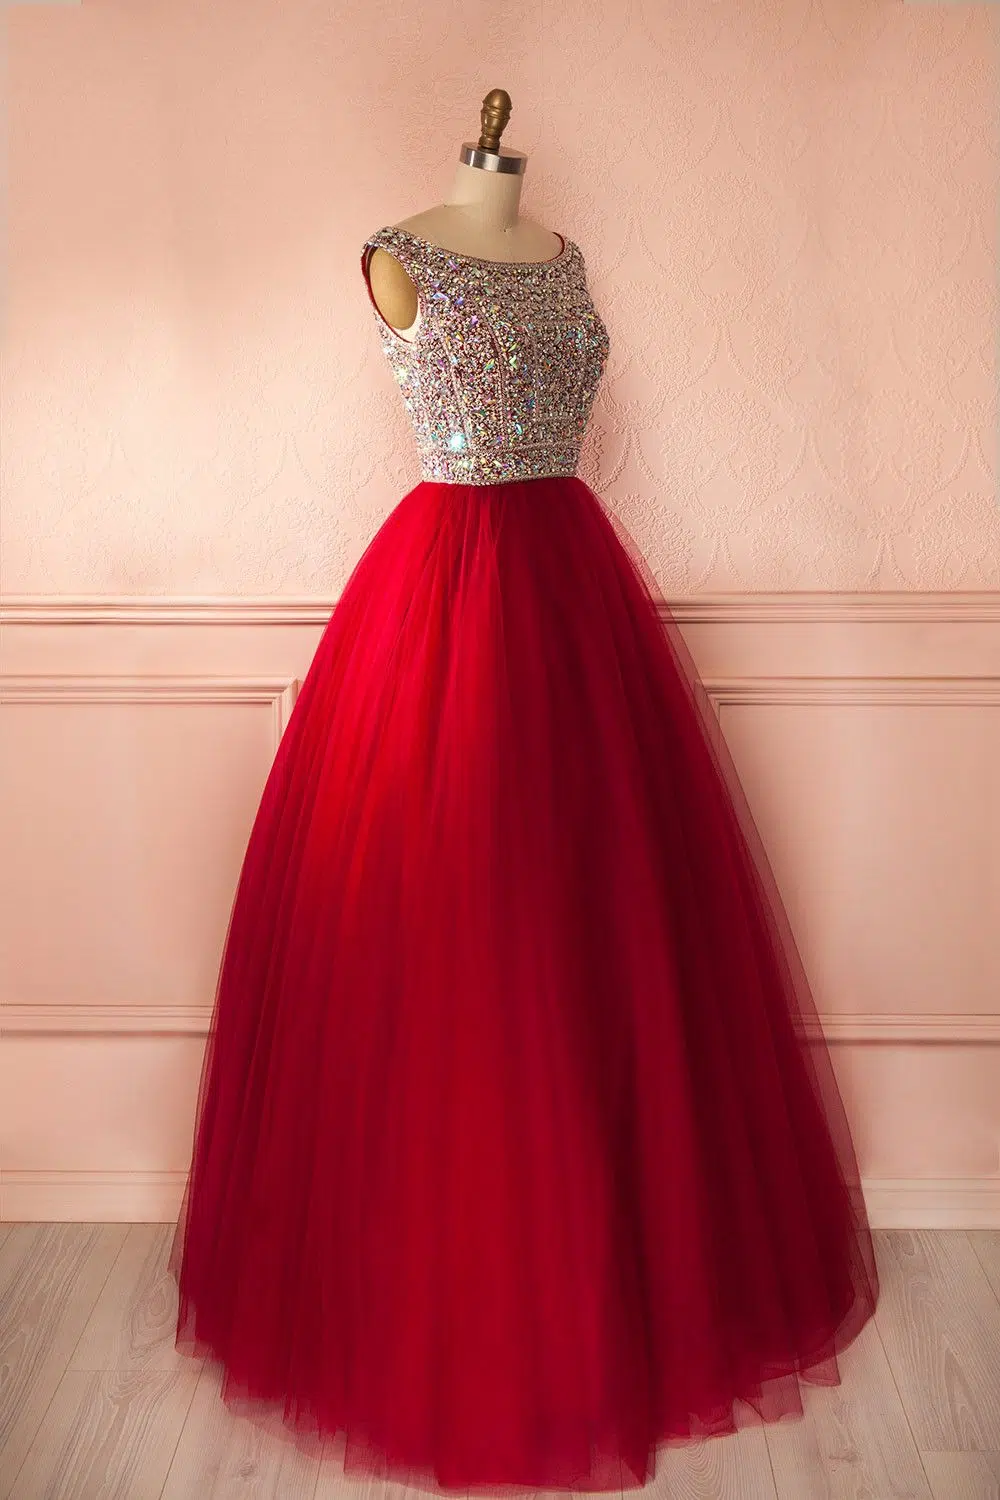 Une robe de bal avec un bas rouge